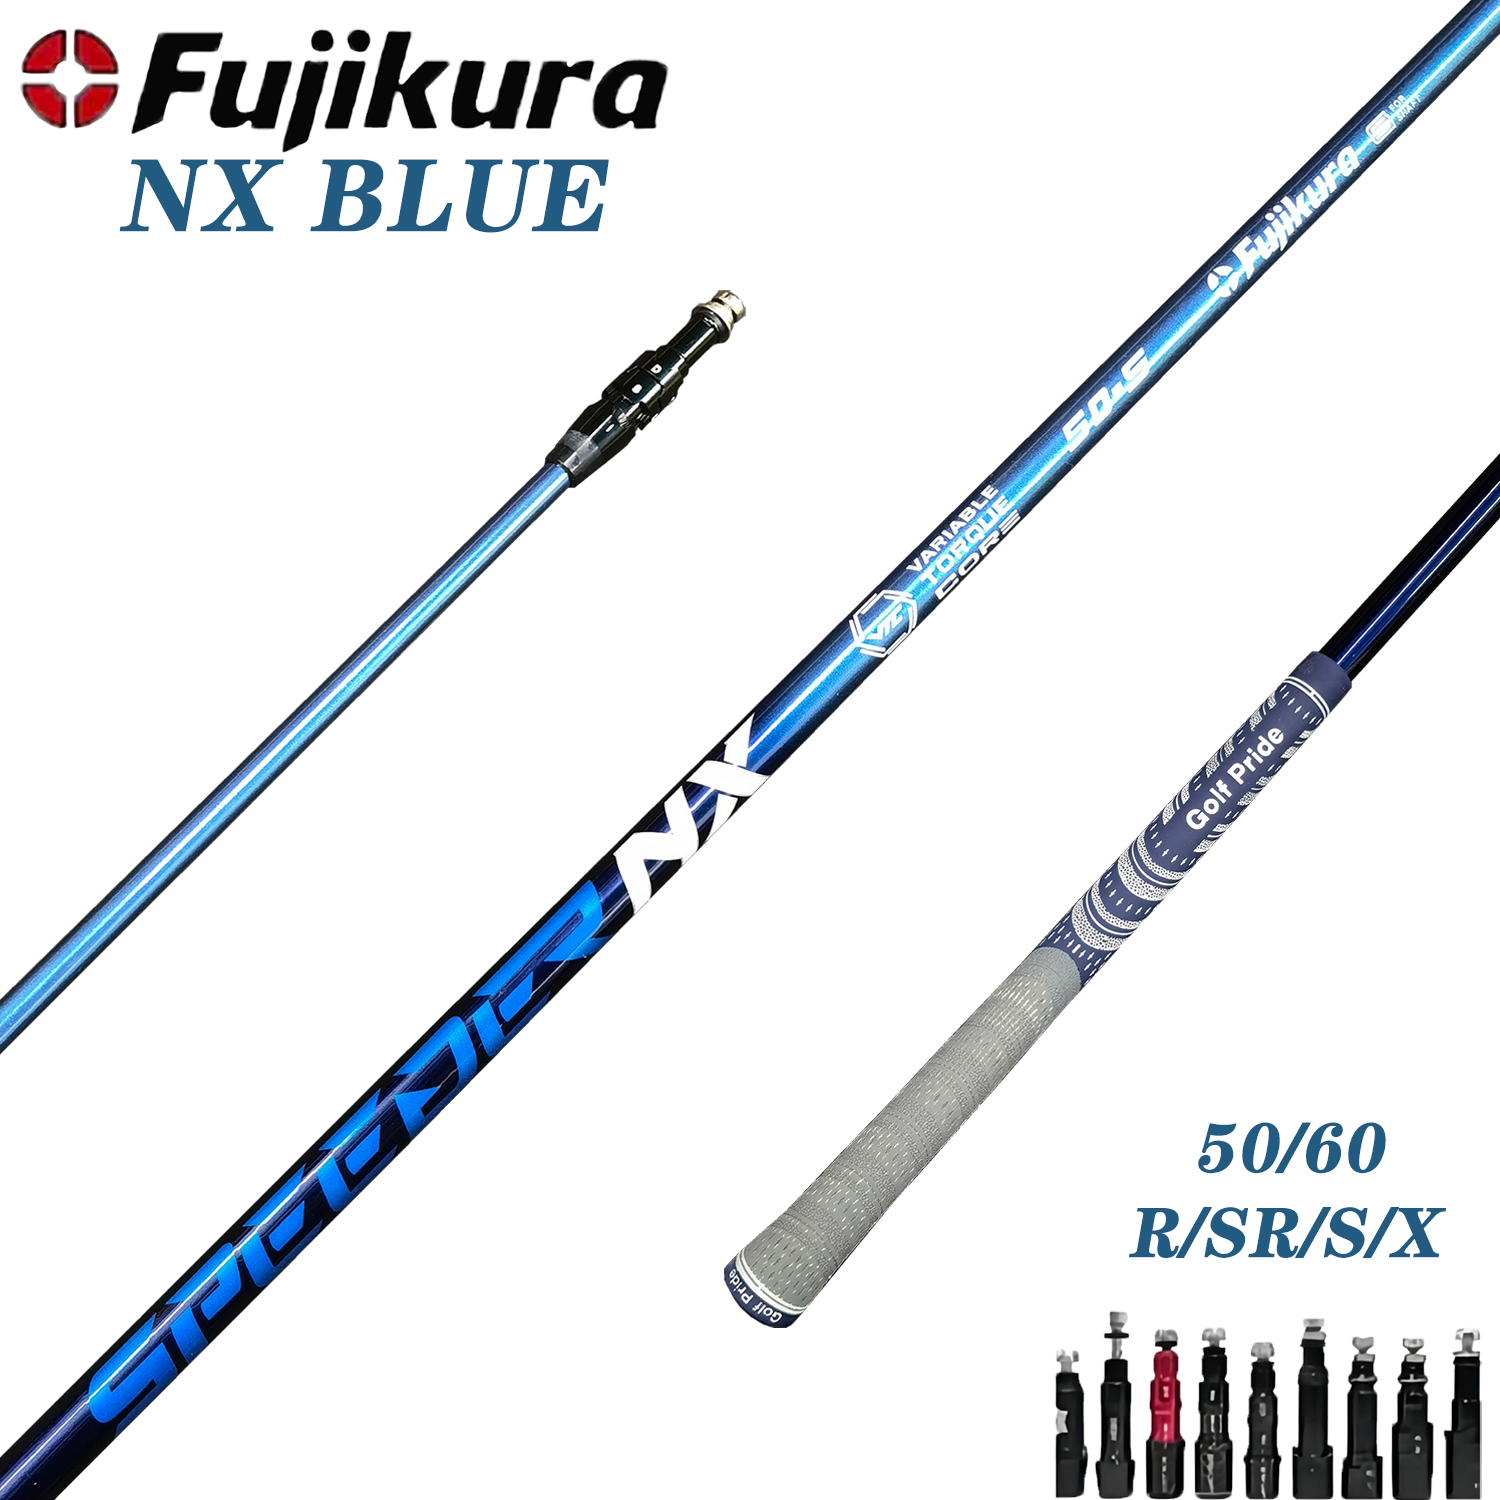 Özelleştirilebilir Golf Şaftı - Fujikura Speeder NX 50/60 Mavi, Kulüp Milleri - 0.335 İpucu - S, R, X Flex Seçenekleri - Serbest Montaj Kılıf Kavruğu